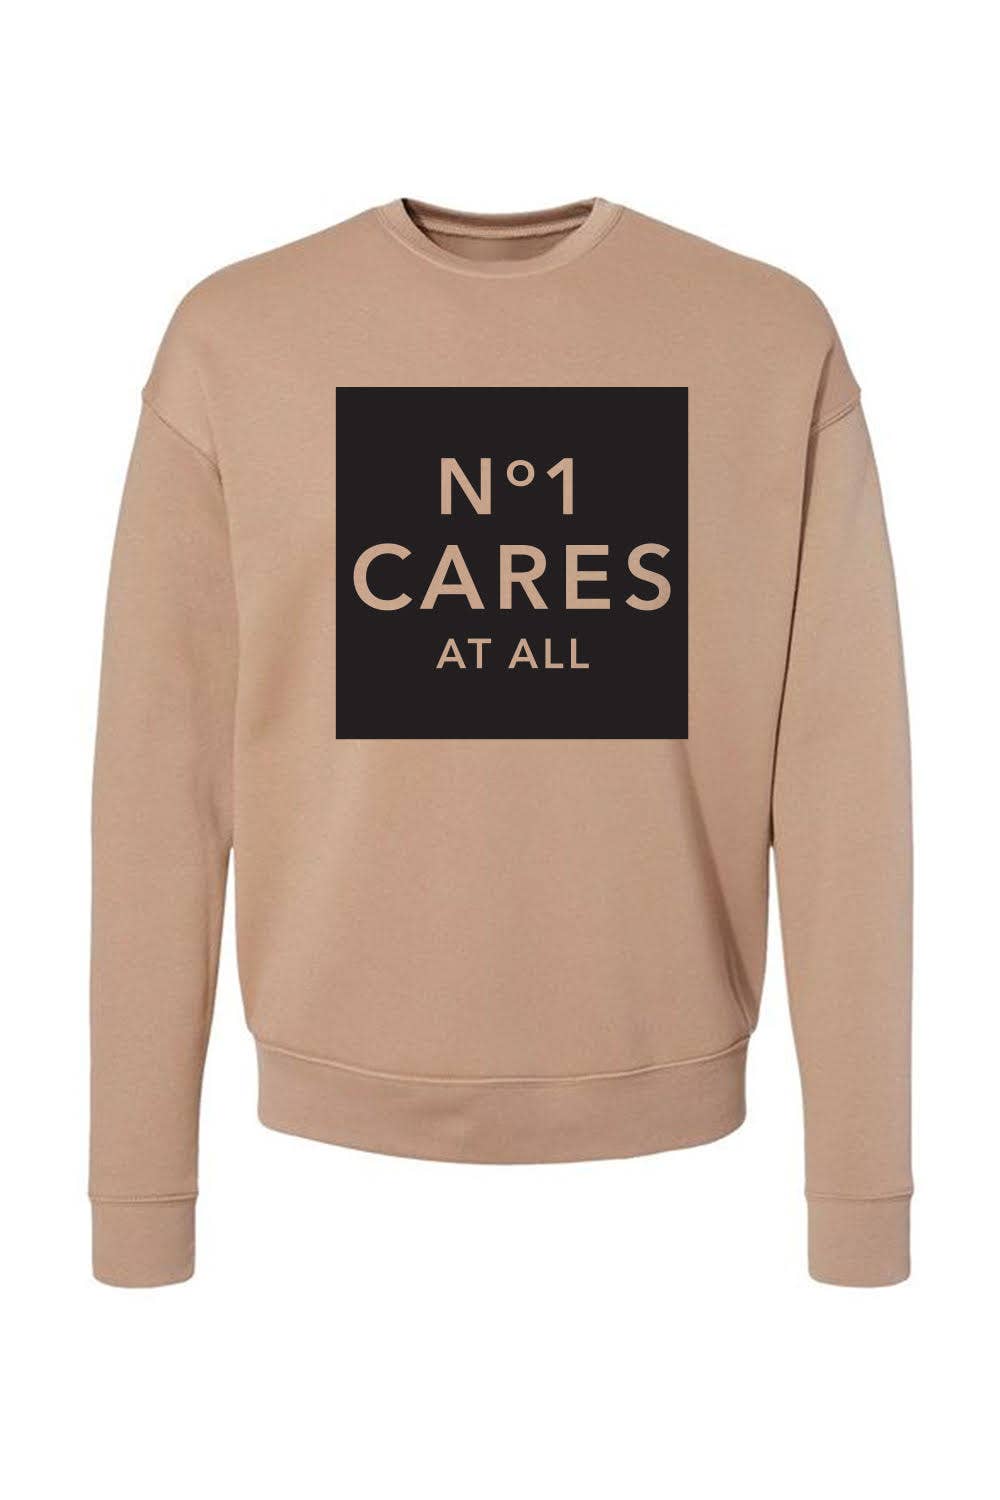 No One Cares - Crewneck Sweater